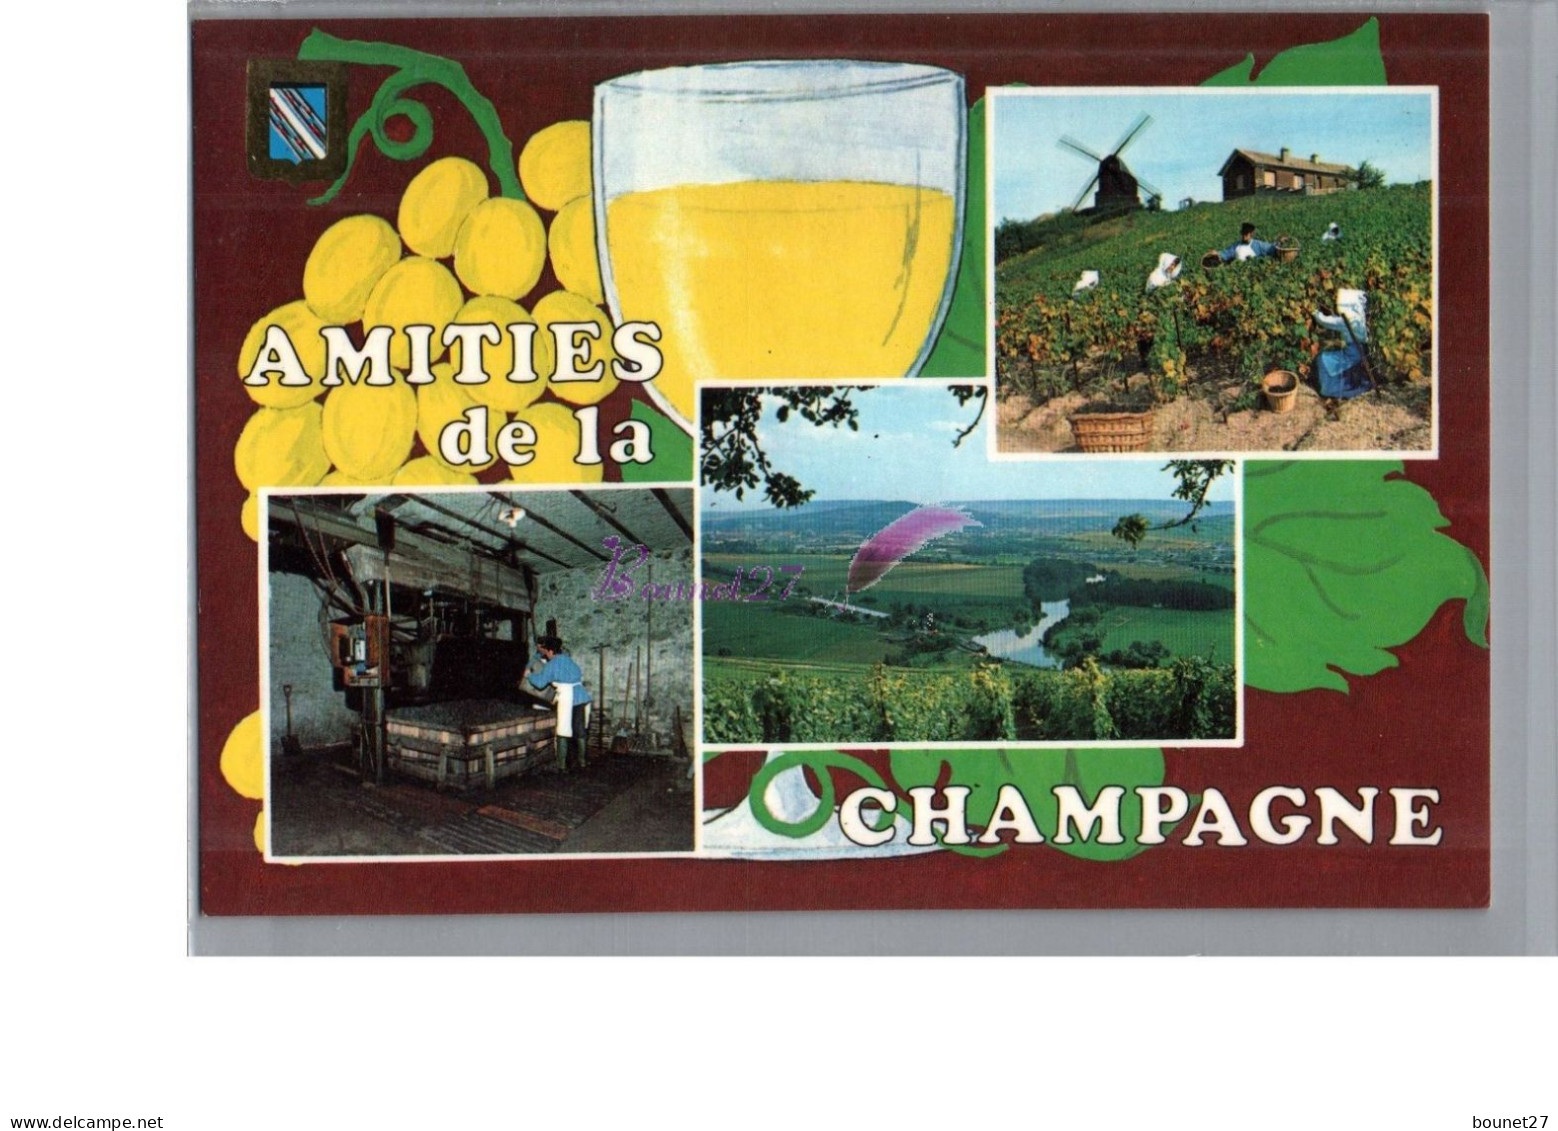 CHAMPAGNE - Amitiés De La Champagne Moulin à Vent Raisin Verre Vigne Vigneron Fabrique Carte Vierge - Champagne-Ardenne